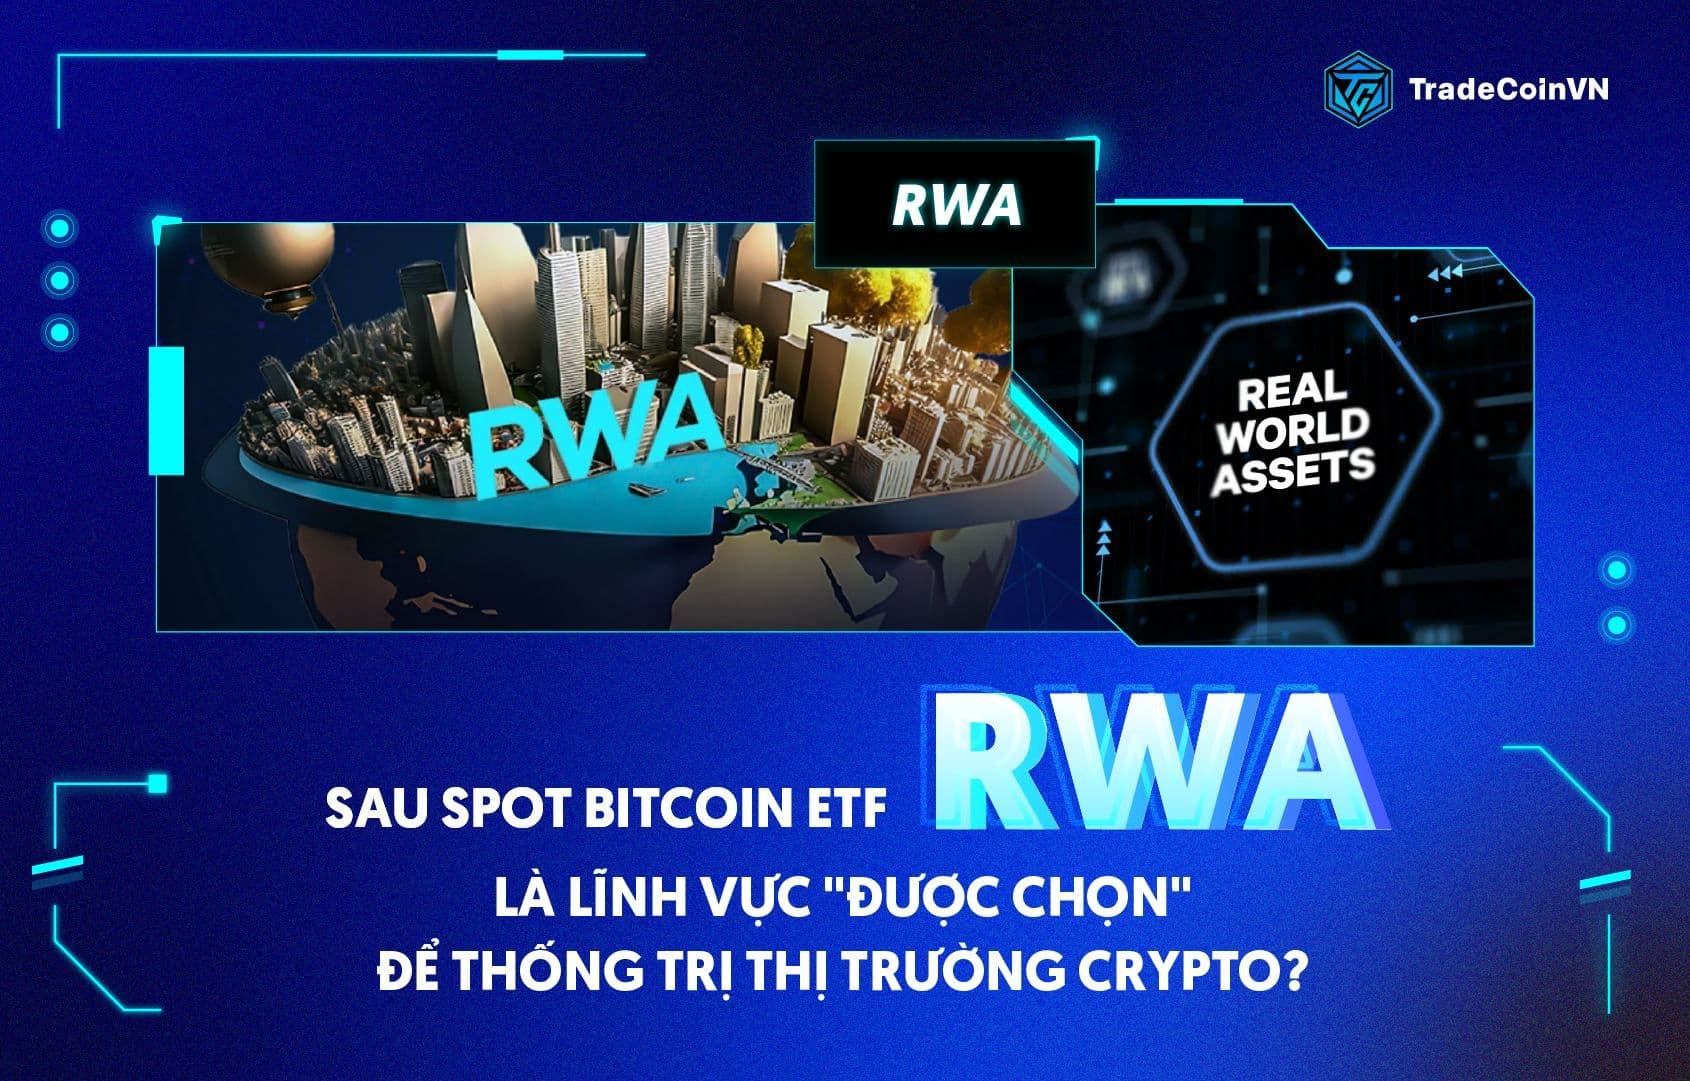 Sau Spot Bitcoin ETF, RWA là lĩnh vực "được chọn" để thống trị thị trường Crypto?